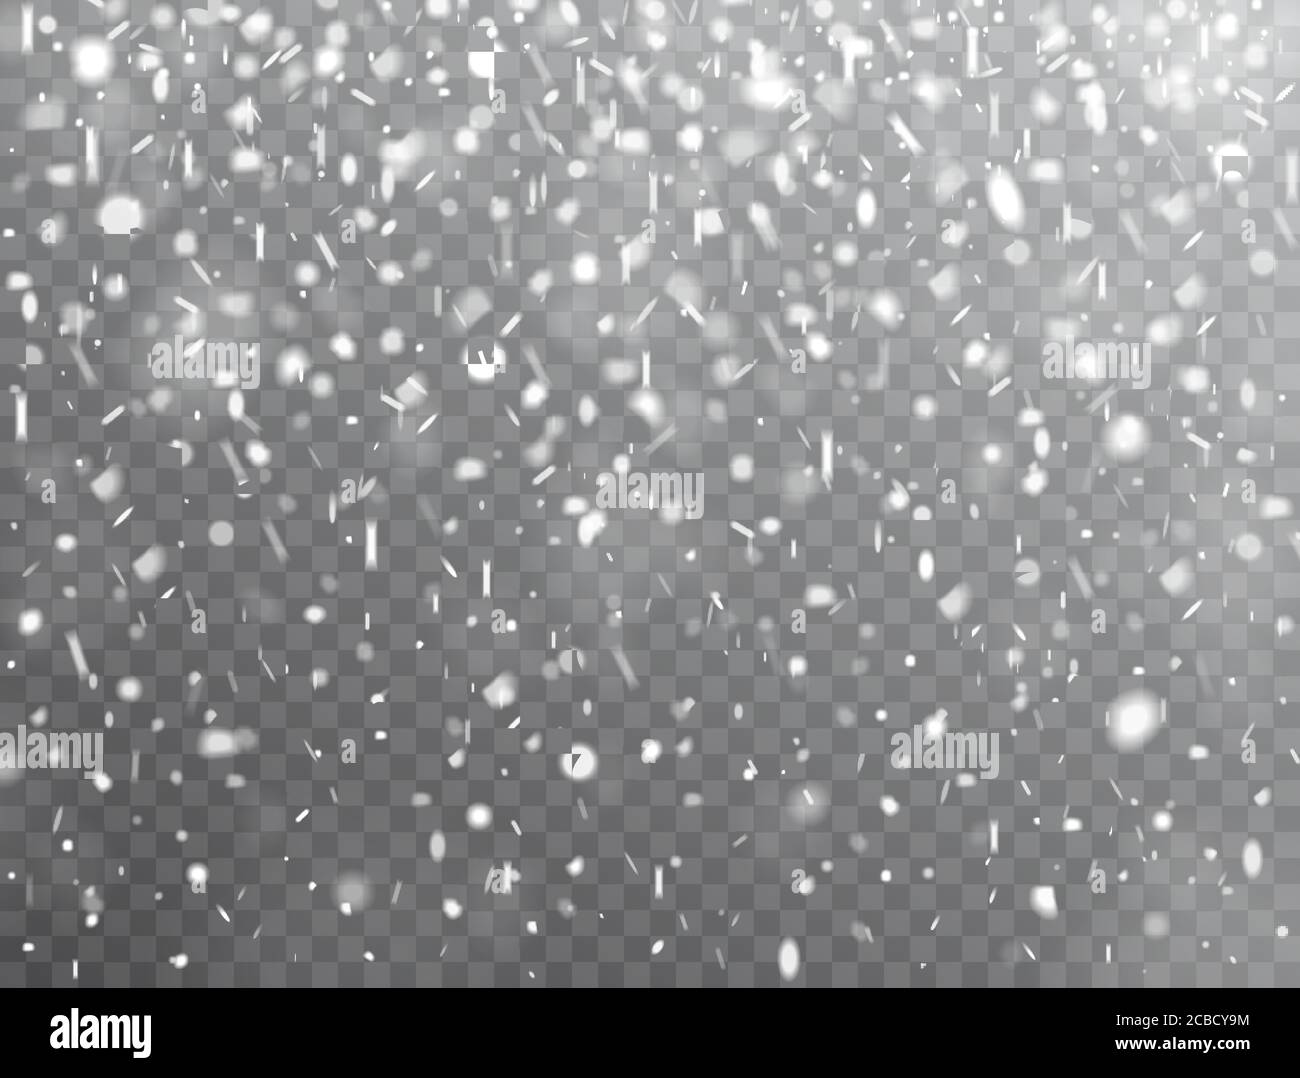 Schneehintergrund. Realistischer fallender Schnee. Winterdesign mit Schnee auf transparentem Hintergrund. Froststurm, Schneefall-Effekt. Weihnachten Hintergrund. Vektor Stock Vektor